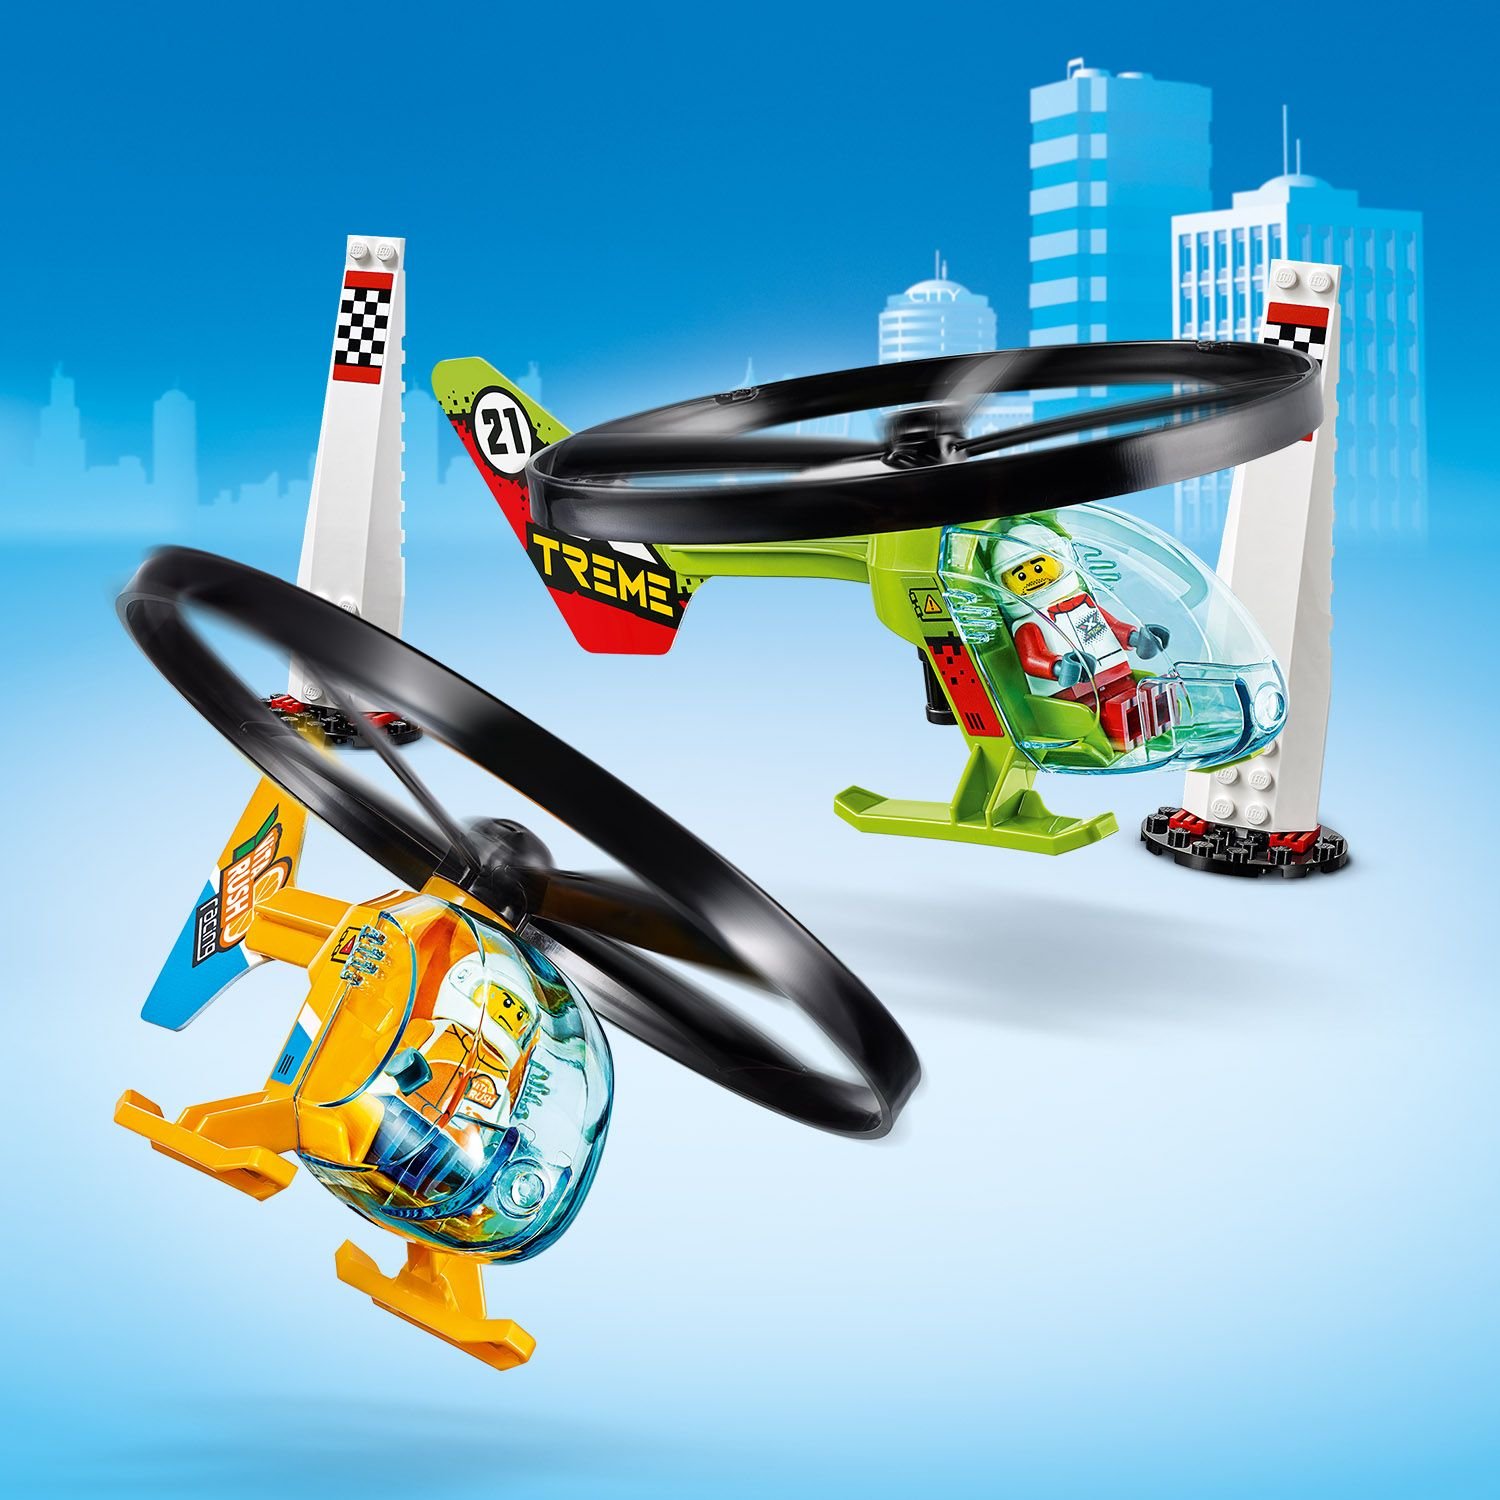 Lego City 60260 Воздушная гонка